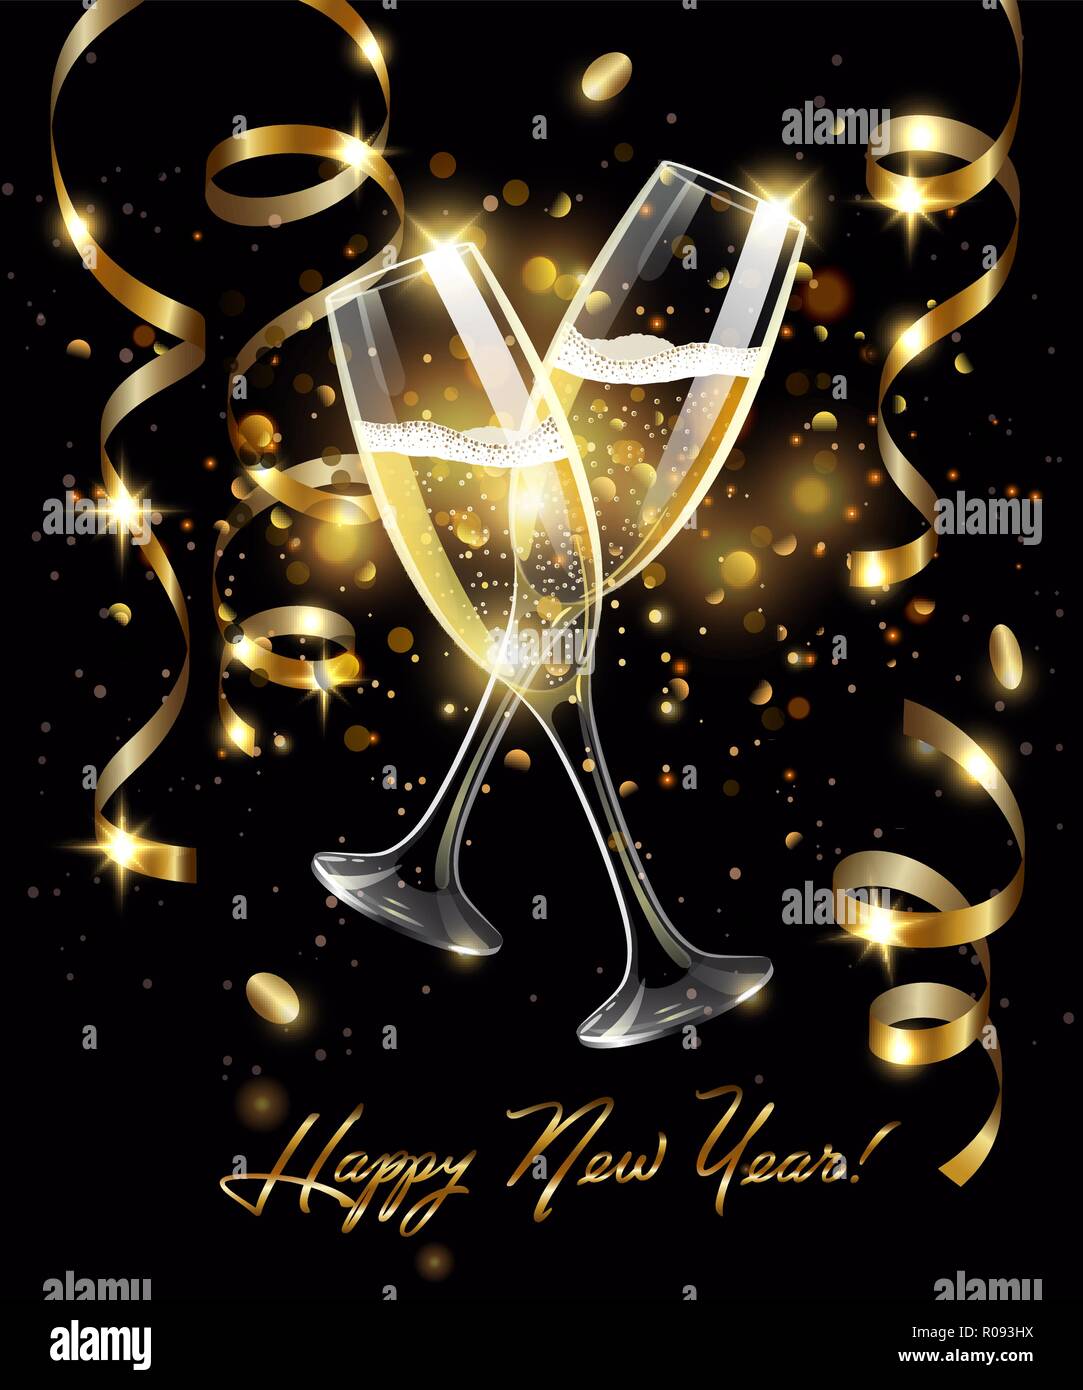 Vini spumanti di bicchieri di champagne con serpentina in oro su sfondo nero, effetto bokeh di fondo con segno Felice Anno Nuovo Illustrazione Vettoriale